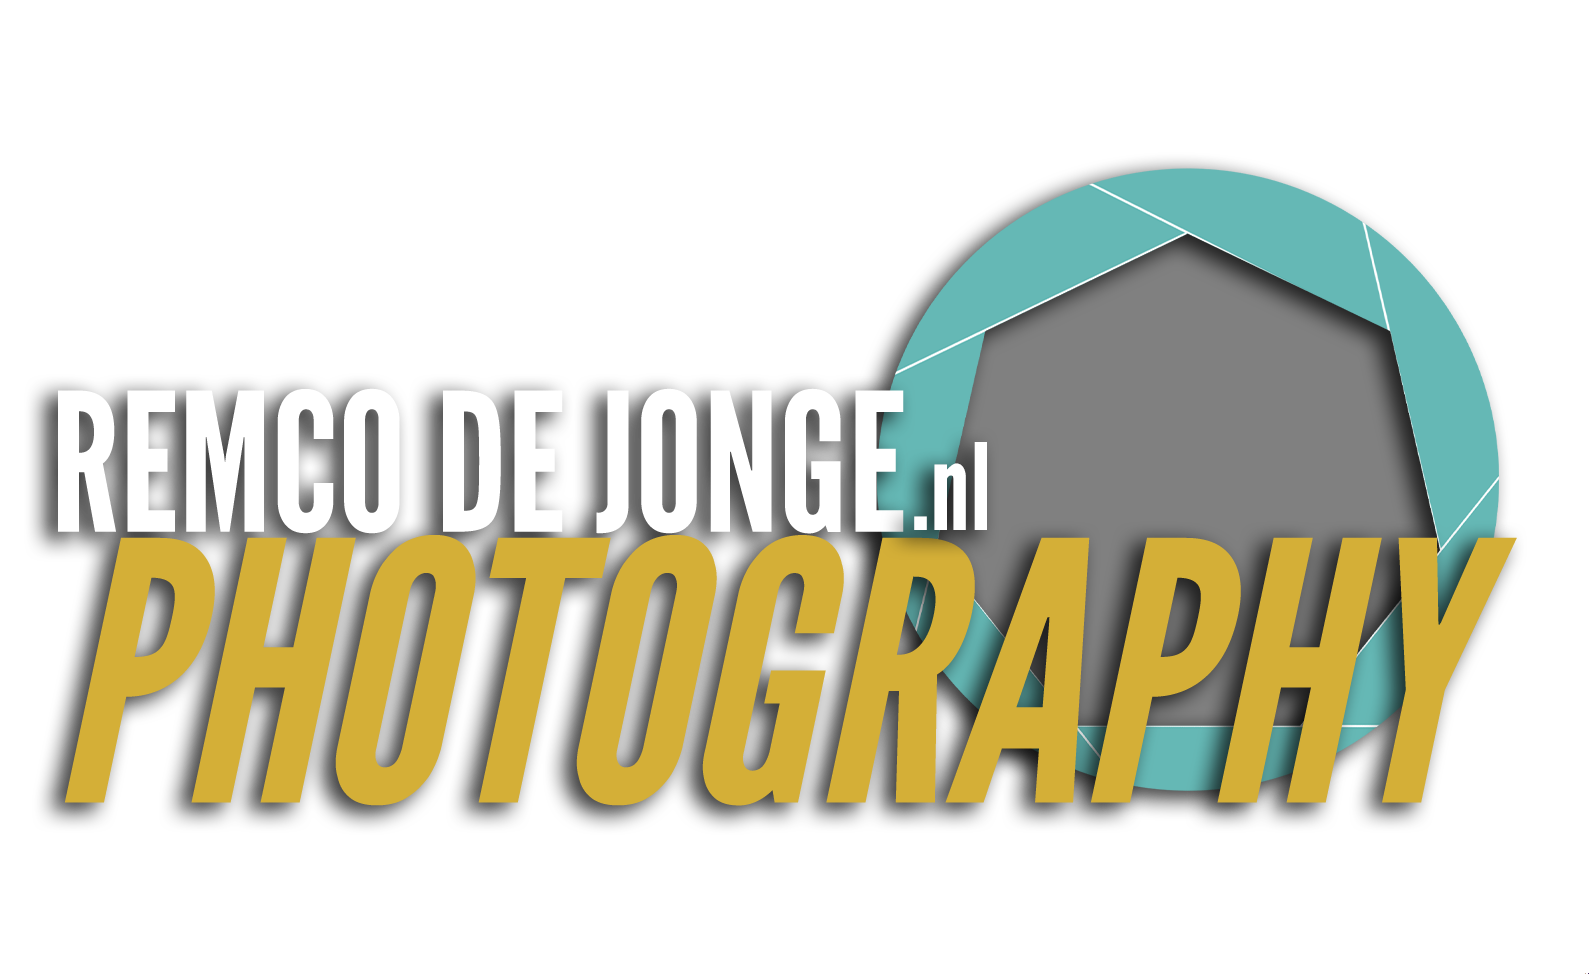 Remco de Jonge Photography